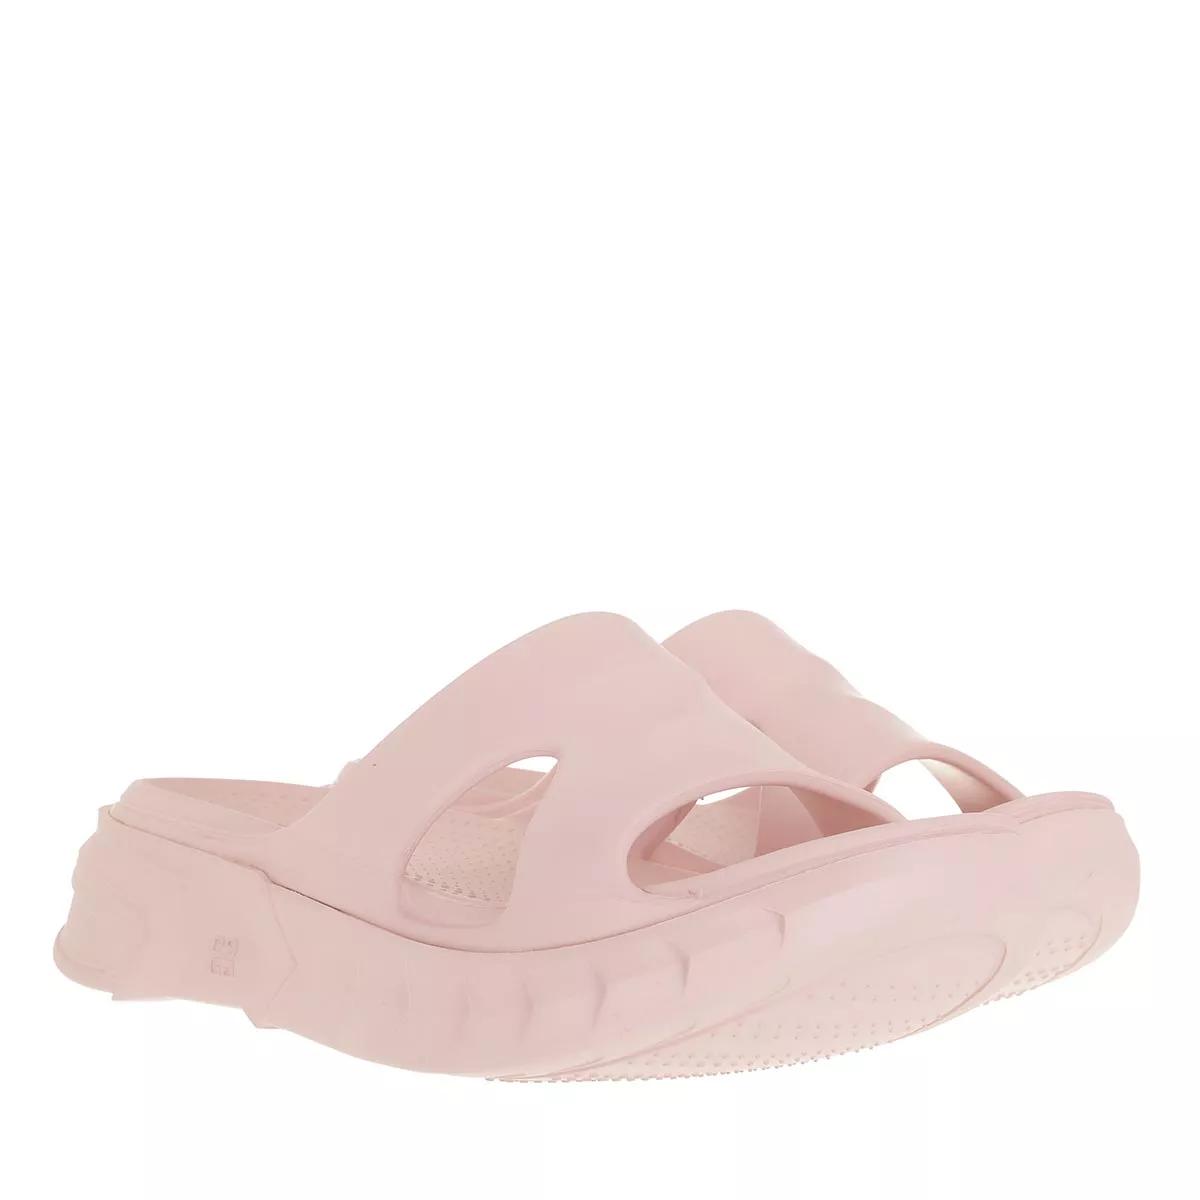 Givenchy Sandalen - Marshmallow Sandals - Gr. 41 (EU) - in Rosa - für Damen von Givenchy